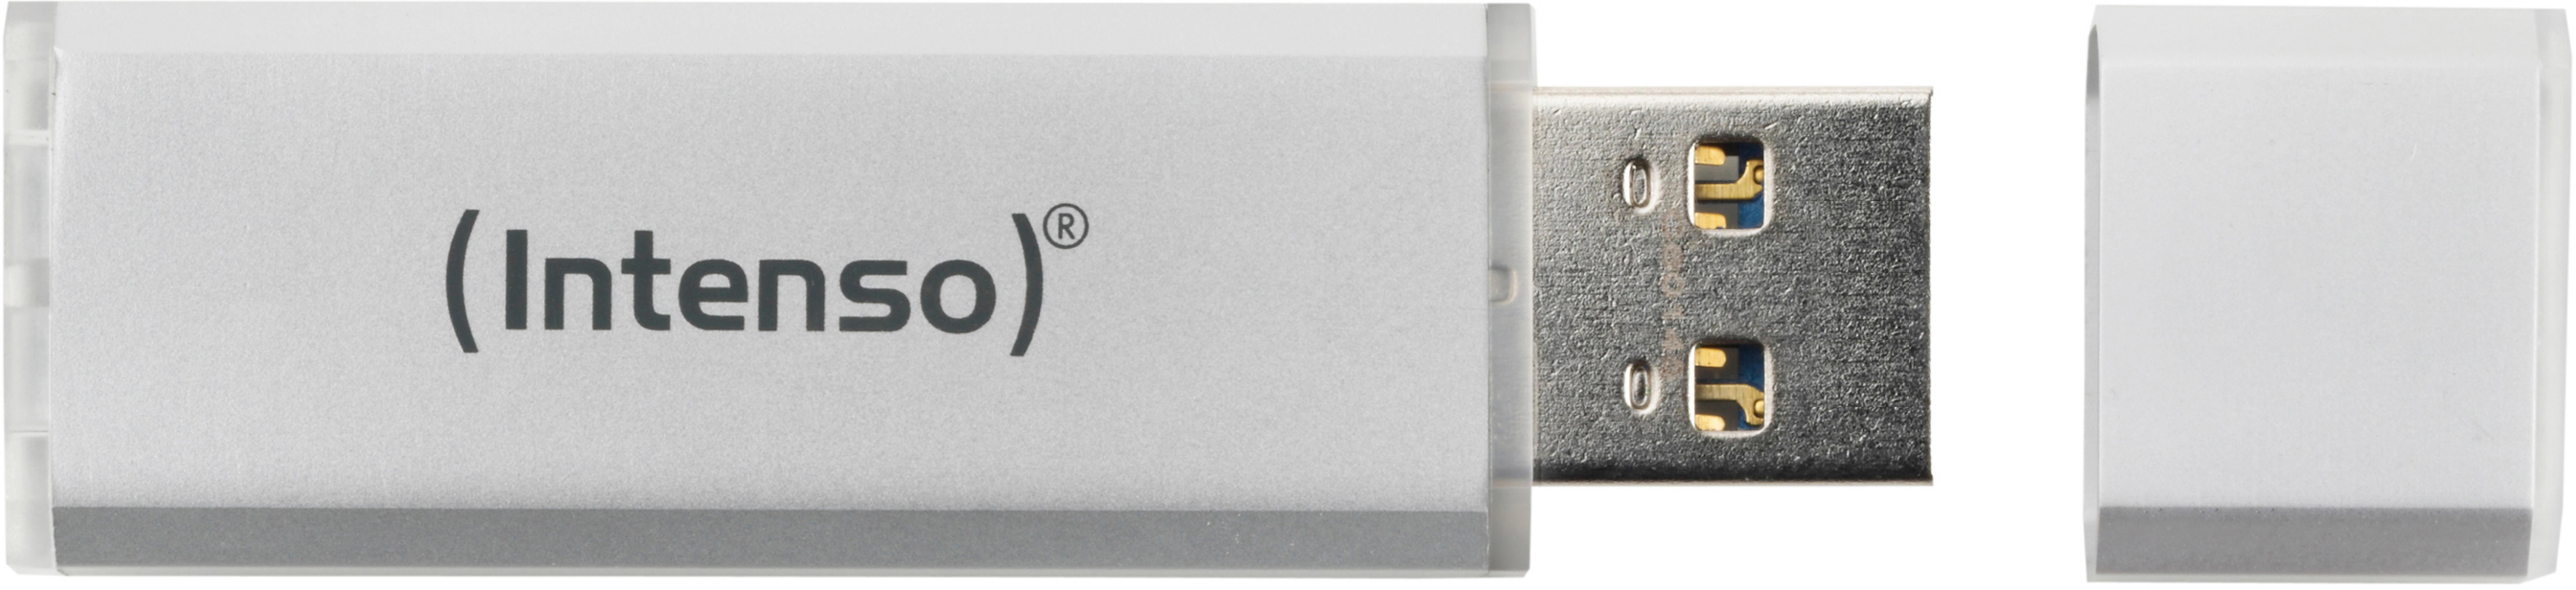 INTENSO 3521452 4GB 4 LINE (Silber, ALU INT USB-Stick GB) SILBER